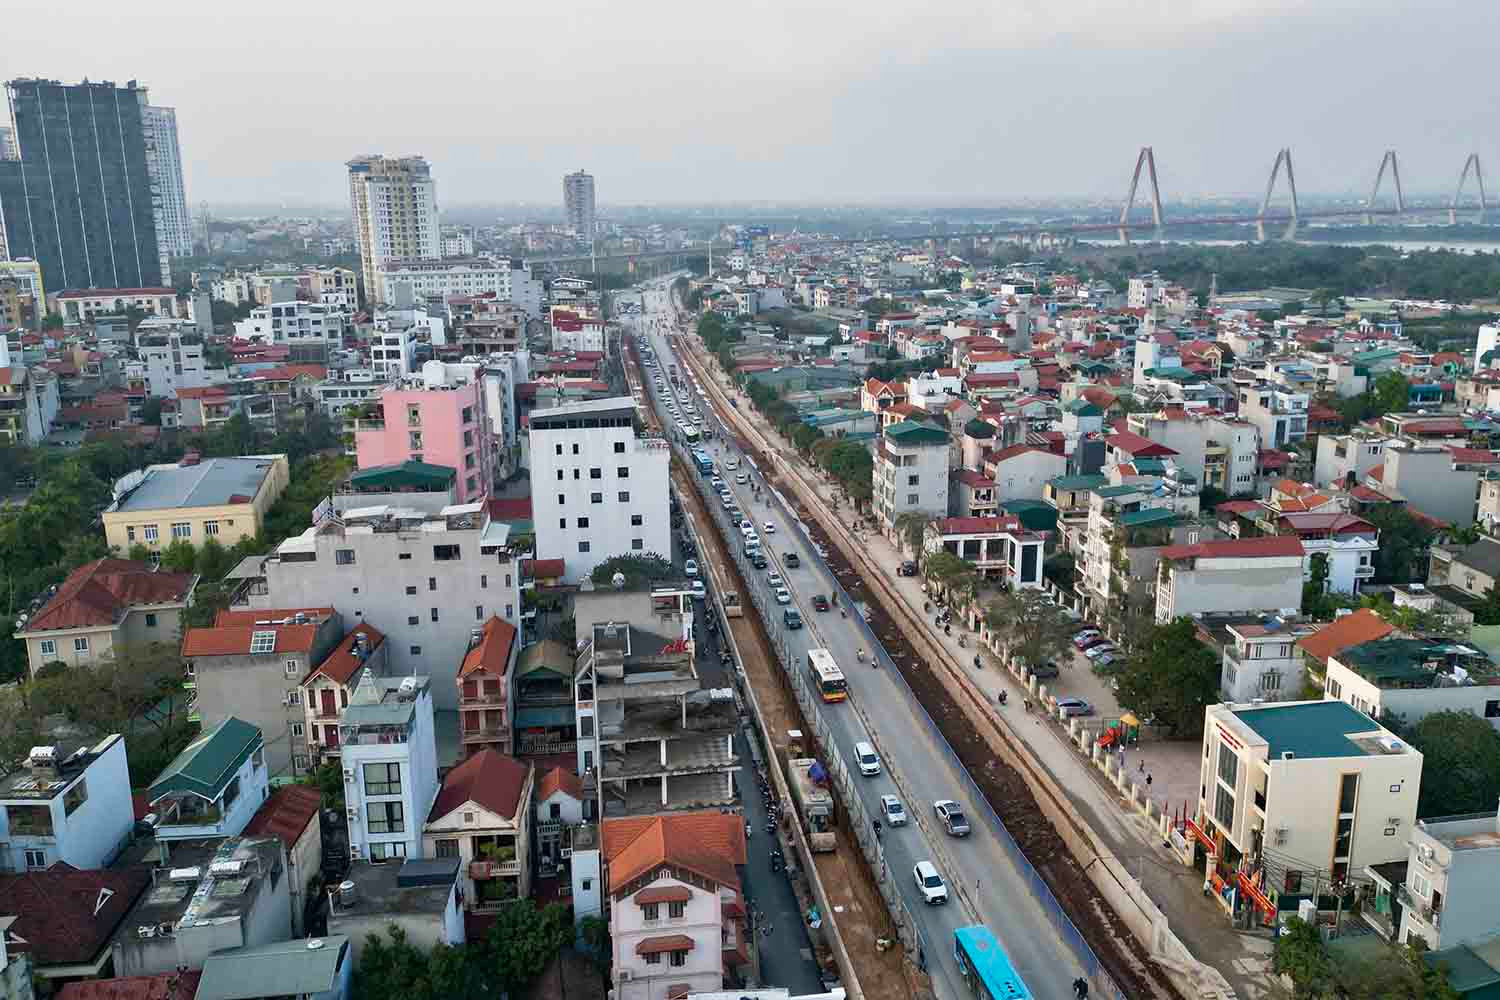 Cách đó khoảng, Dự án mở rộng đường Âu Cơ - Nghi Tàm đoạn từ nút giao khách sạn Thắng Lợi đến nút giao cầu Nhật Tân cũng là một trong những dự án trọng điểm chống ùn tắc của TP Hà Nội.